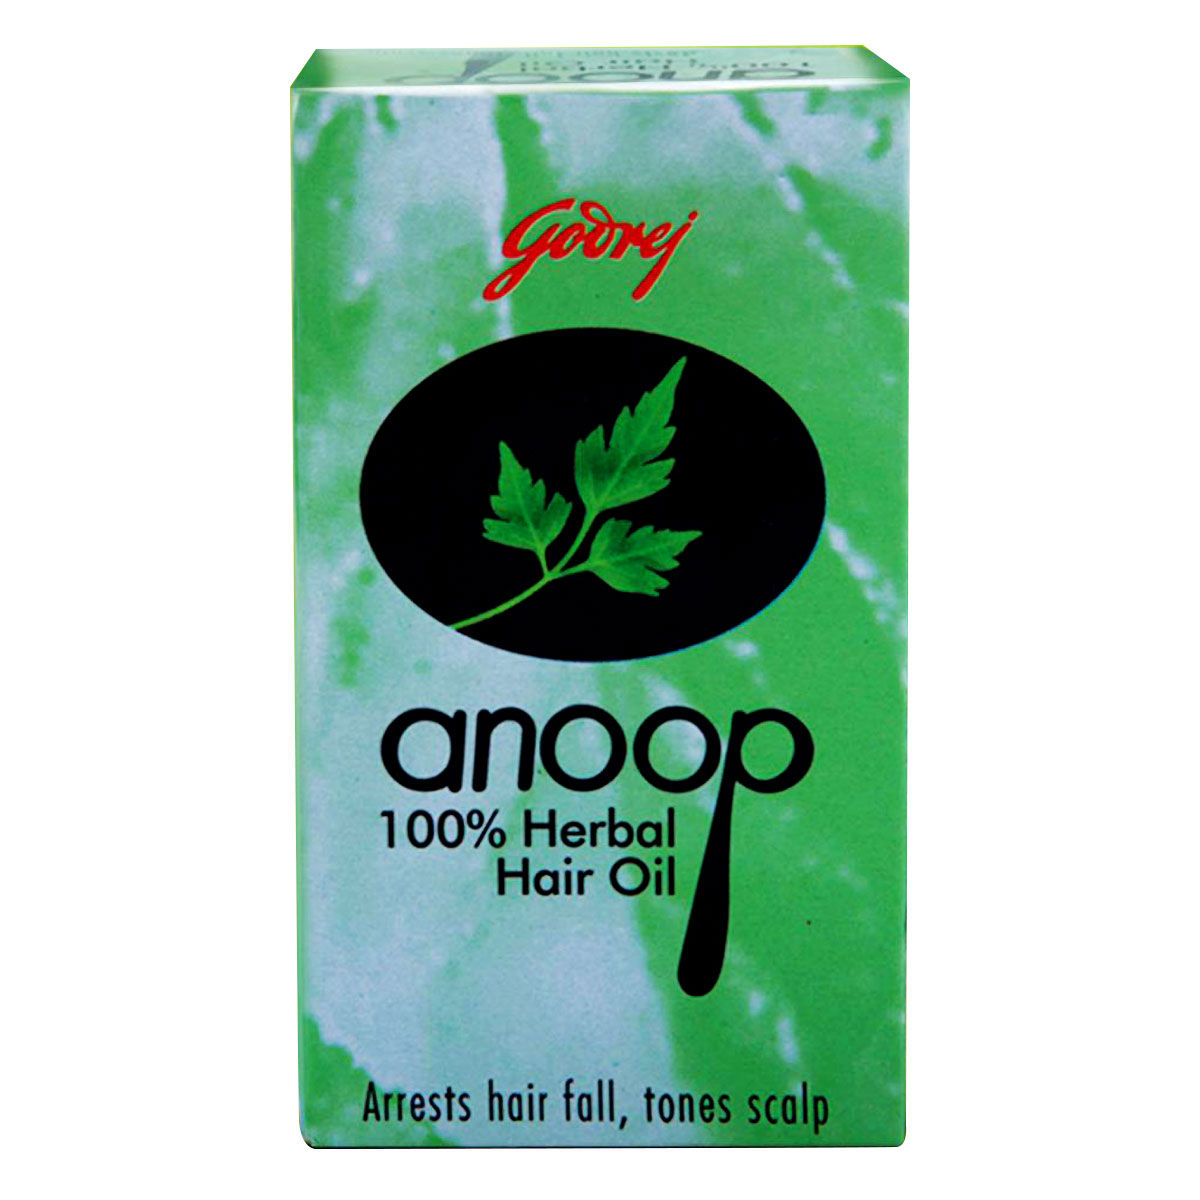 Buy Godrej Anoop Herbal Hair Oil, 50 ml Online